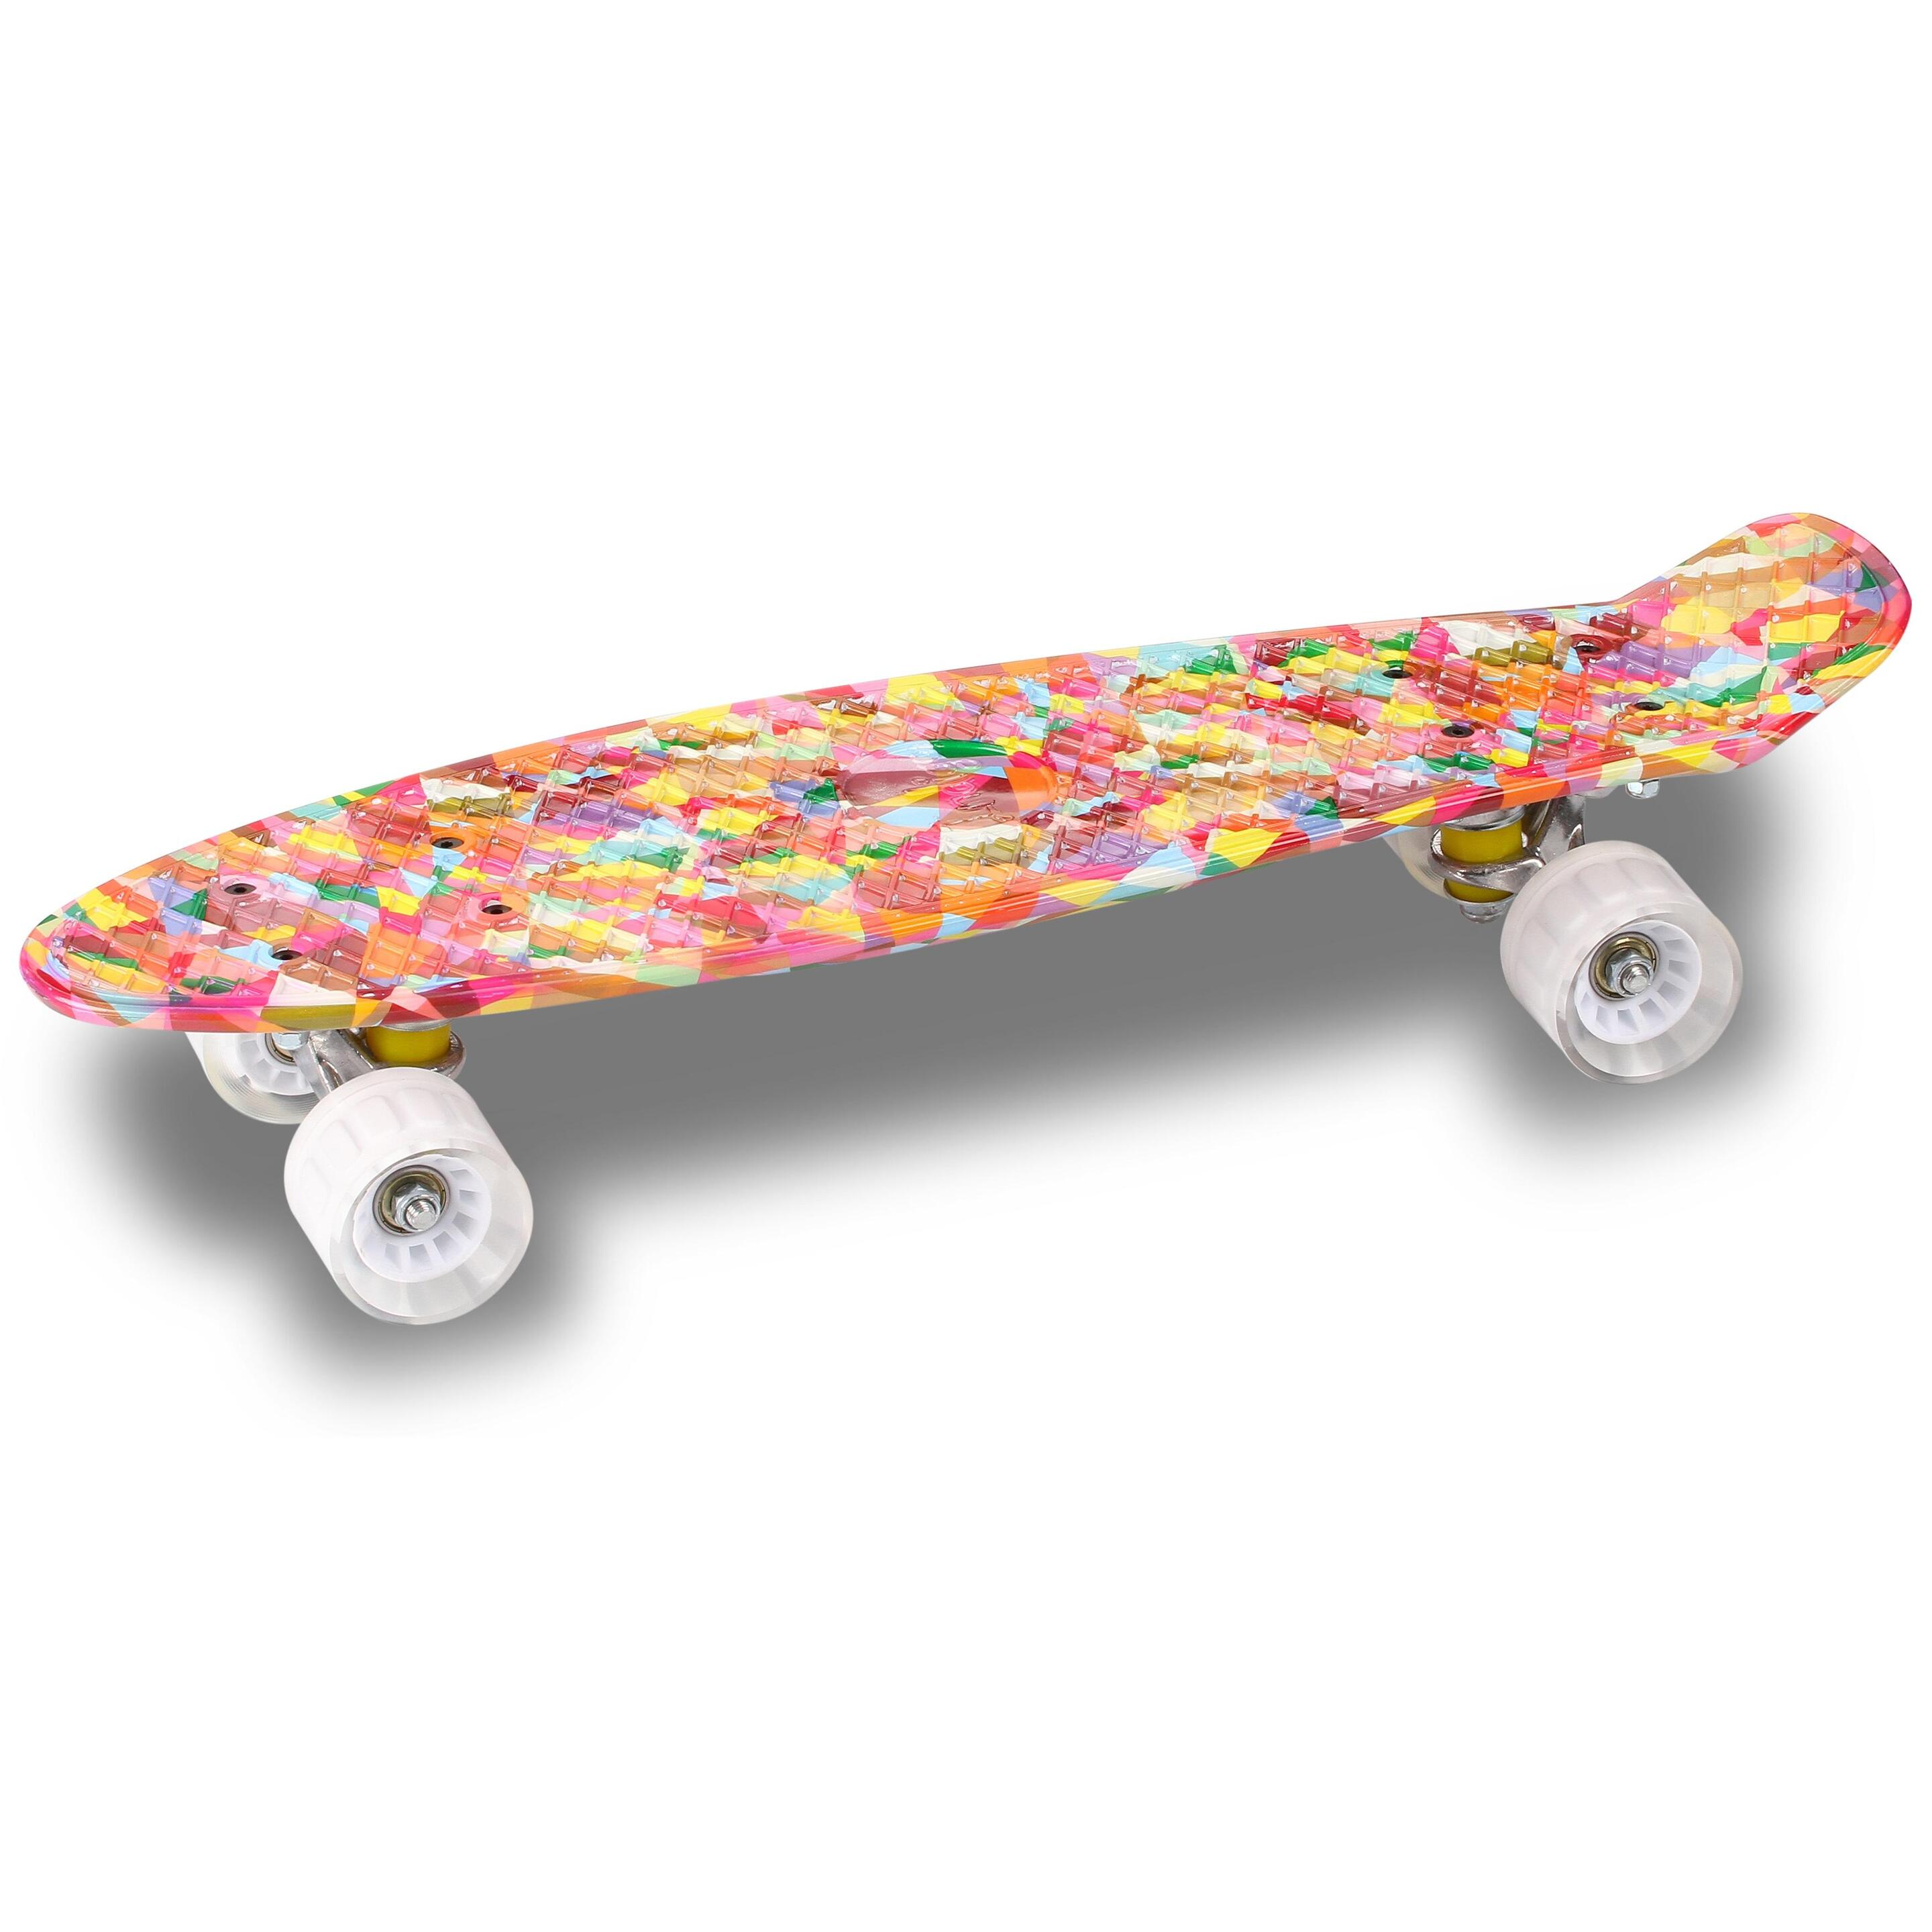 Skateboard Indigo De Pu Cruiser - Multicolor - Skateboard Niños  MKP